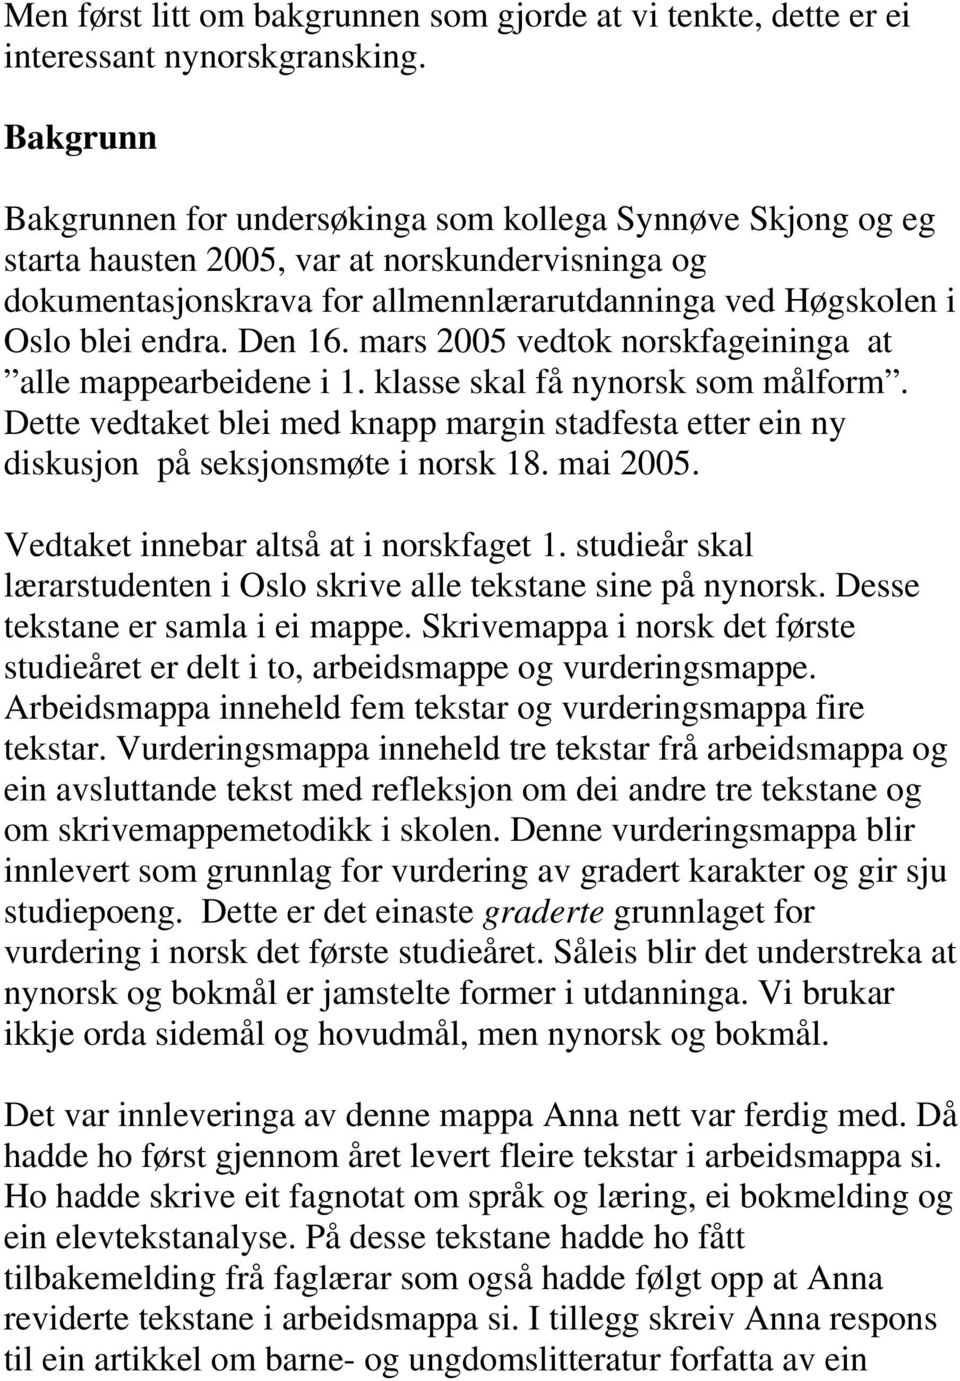 Den 16. mars 2005 vedtok norskfageininga at alle mappearbeidene i 1. klasse skal få nynorsk som målform.